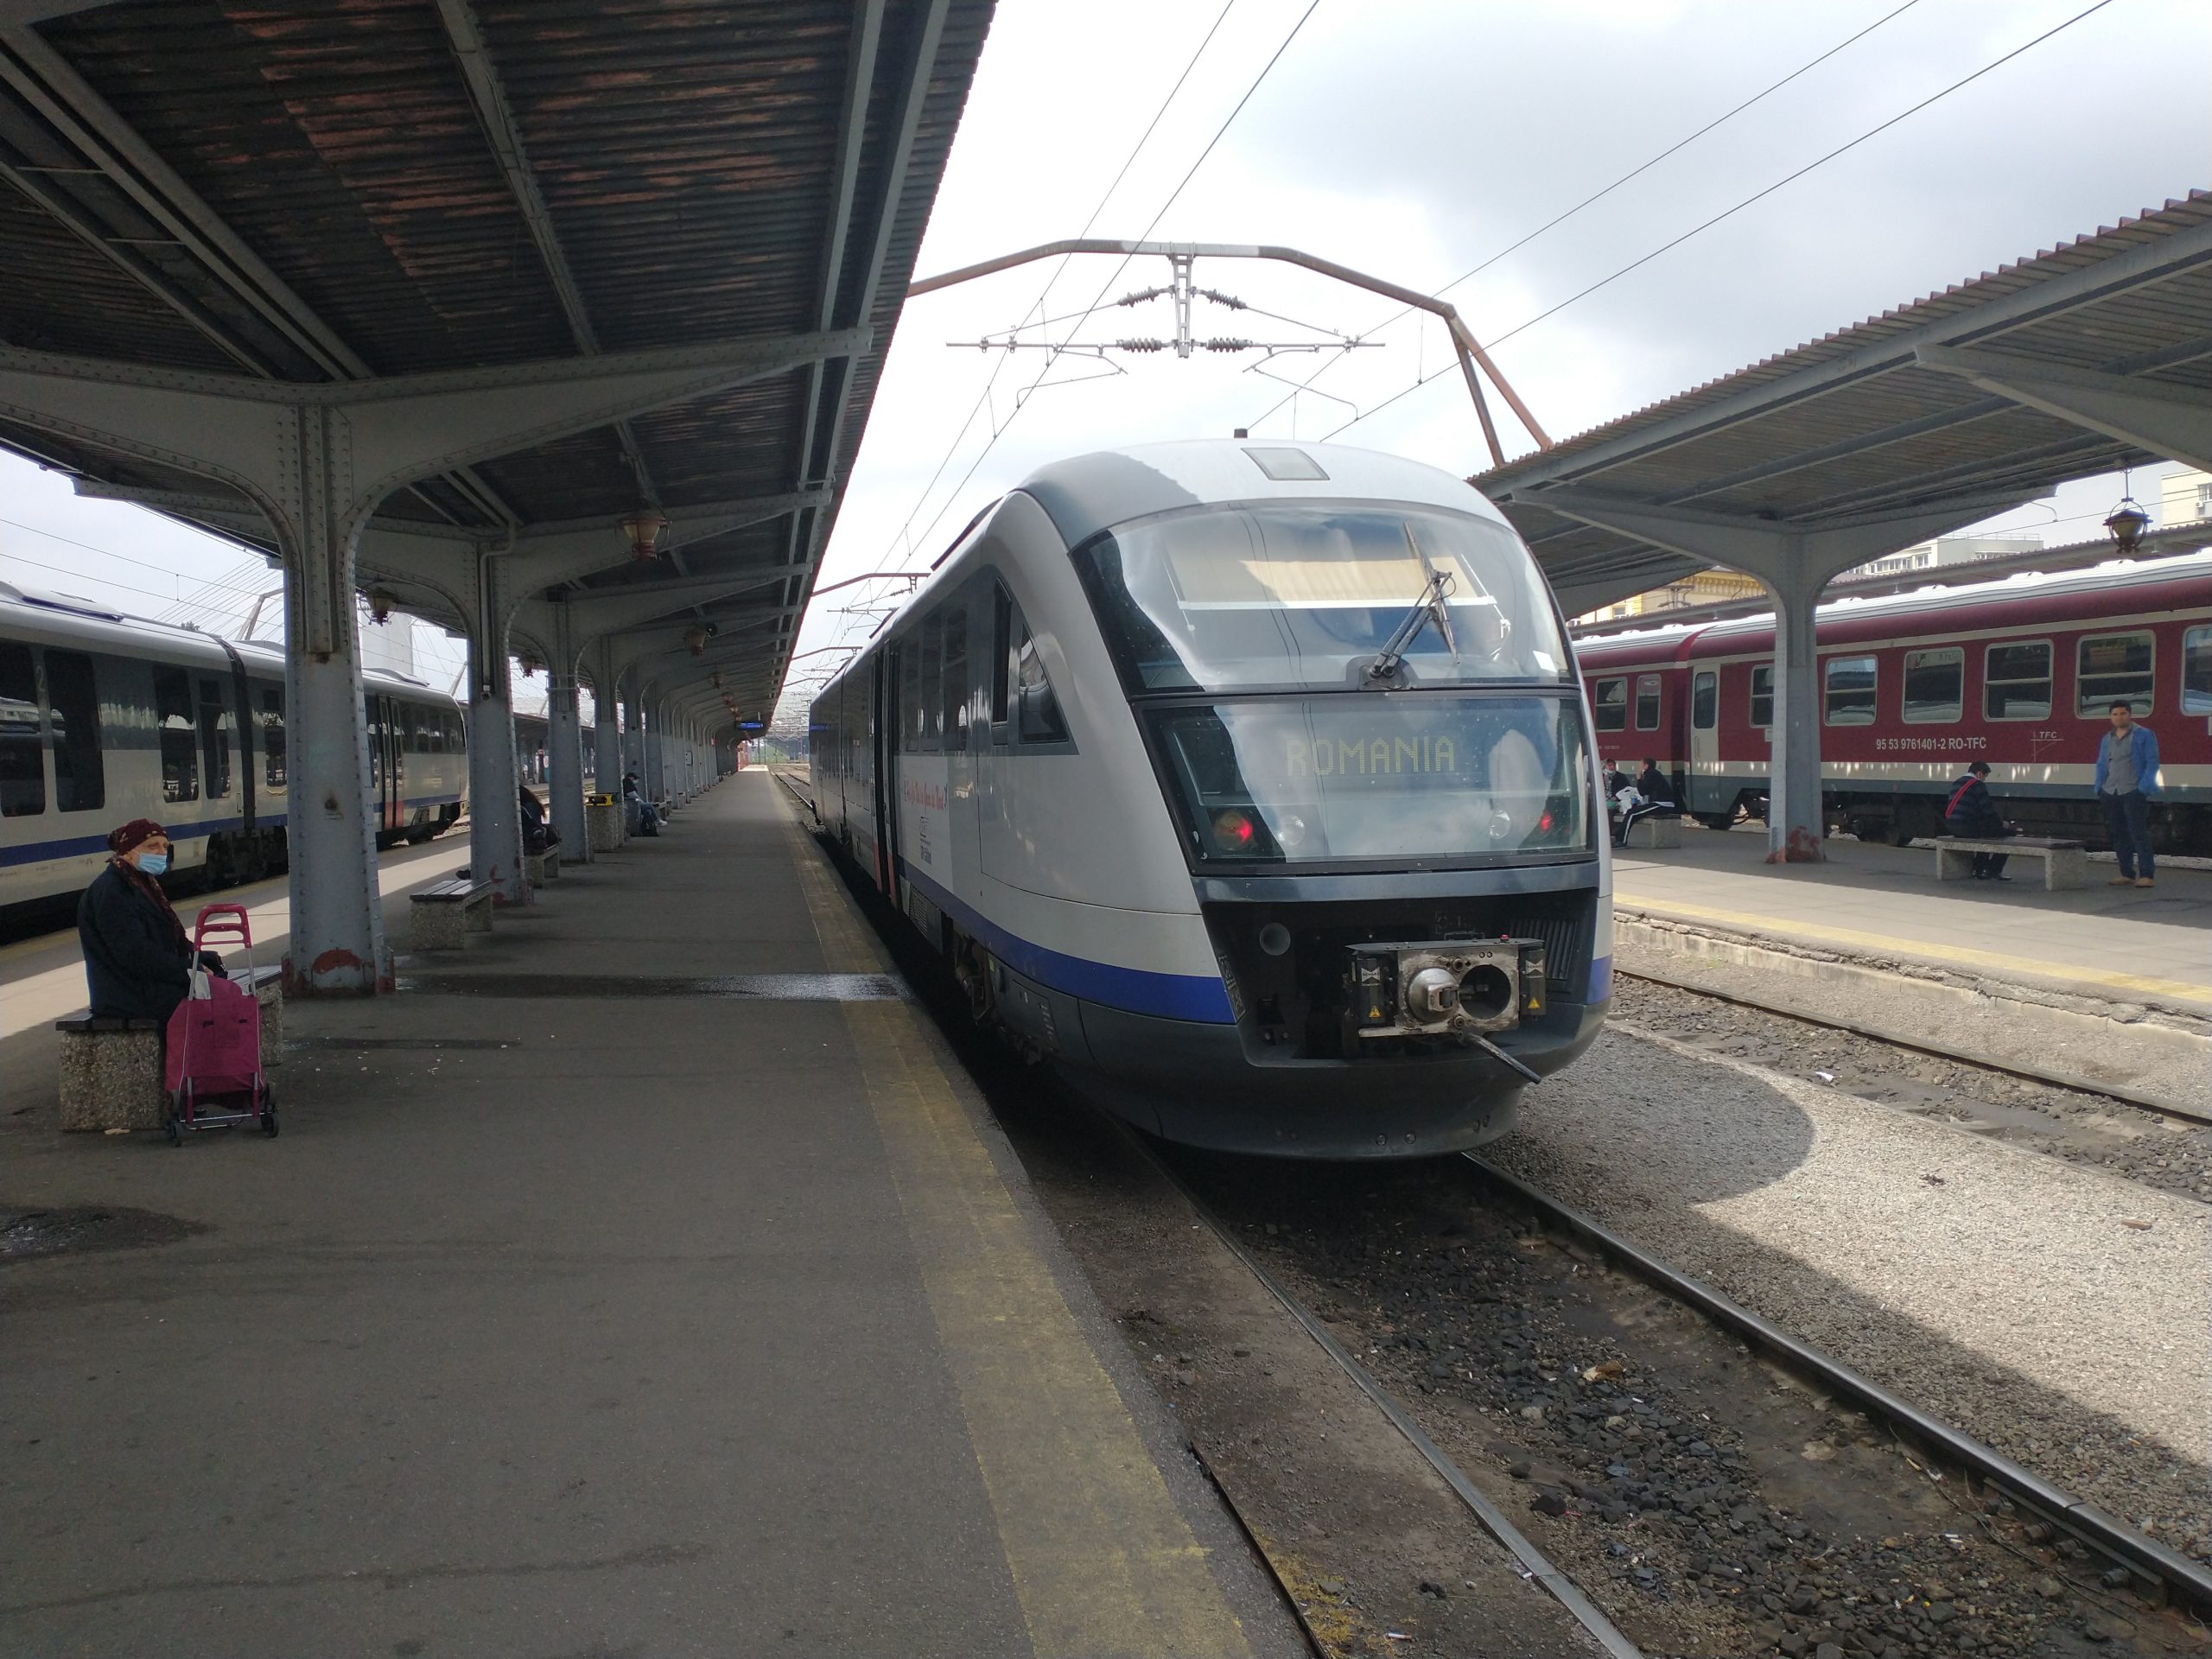 S-a dublat numărul de călători pe ruta spre Otopeni! Acum sunt 14 pe tren